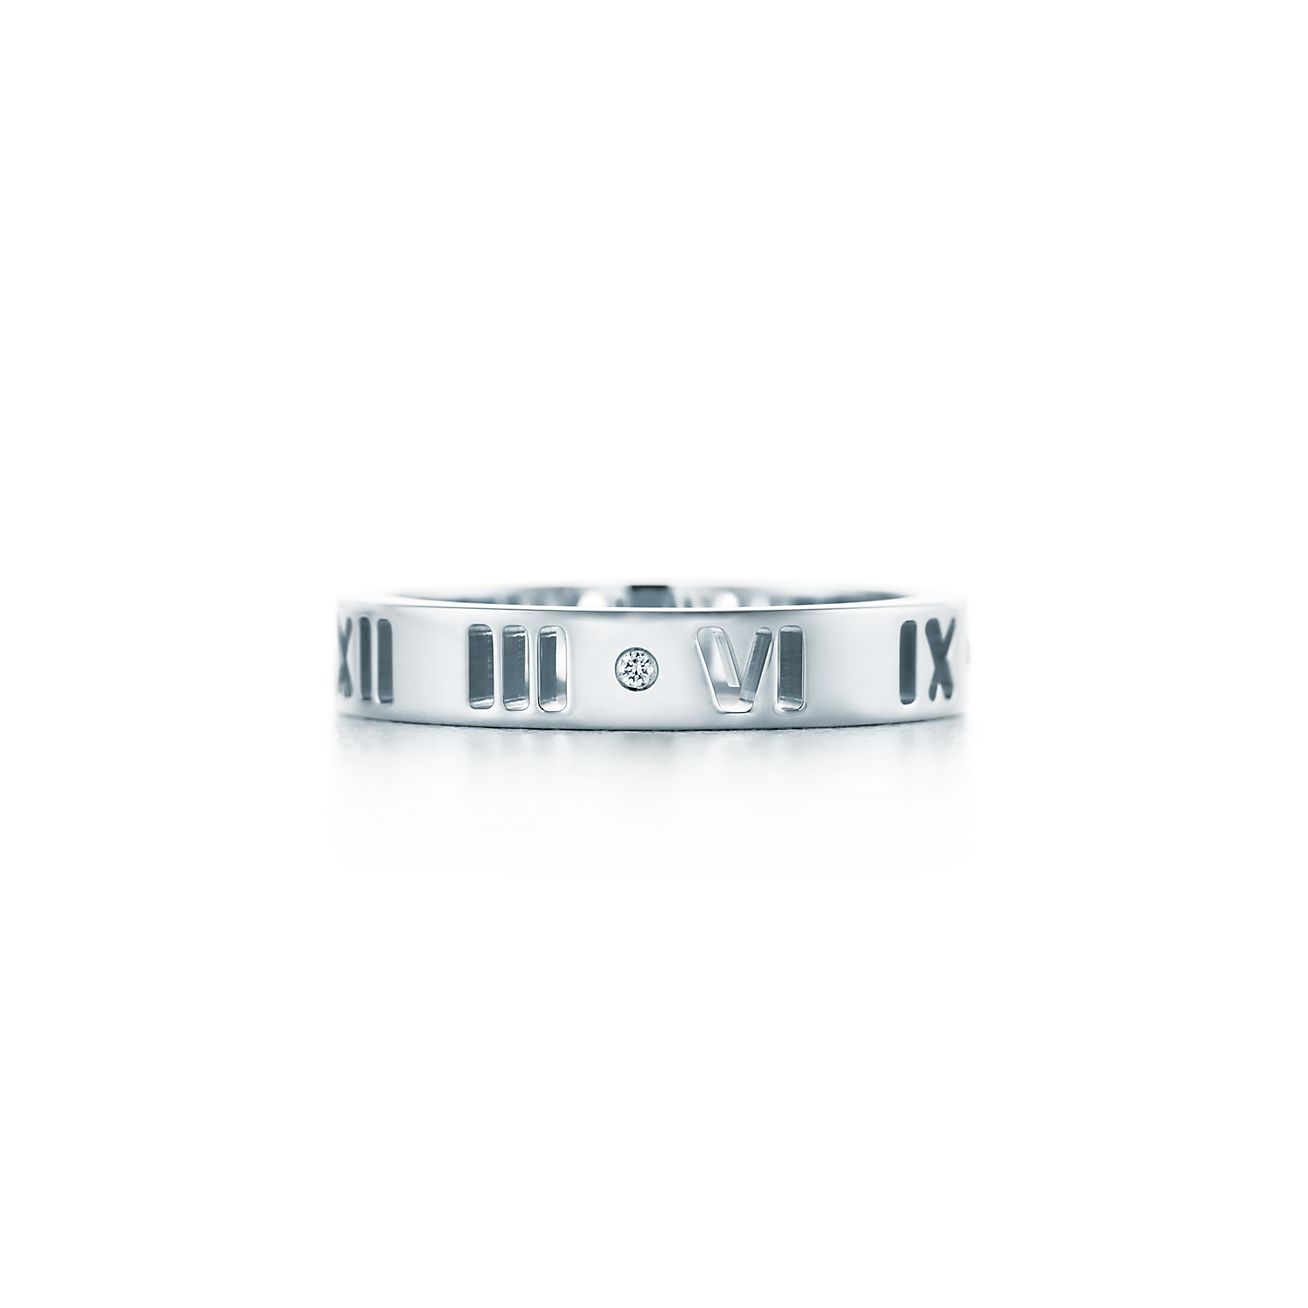 Atlas® pierced ring in 18k white gold 